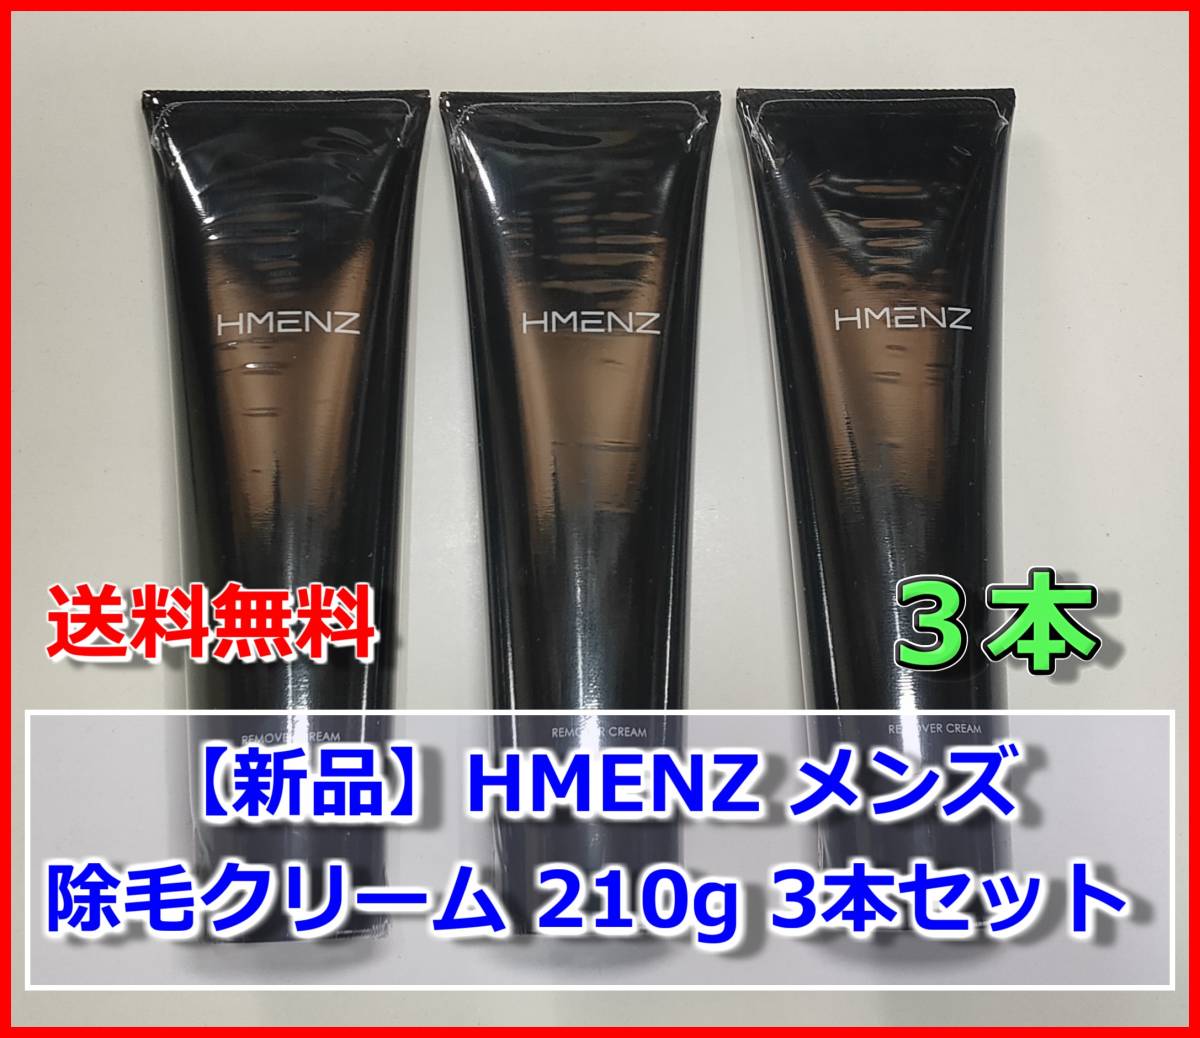 【新品・3本】HMENZ 除毛クリーム 210g 大容量 クリーム 除毛剤 敏感肌 低刺激 脱毛 ボディケア ムダ毛処理 男性 女性 メンズ レディース